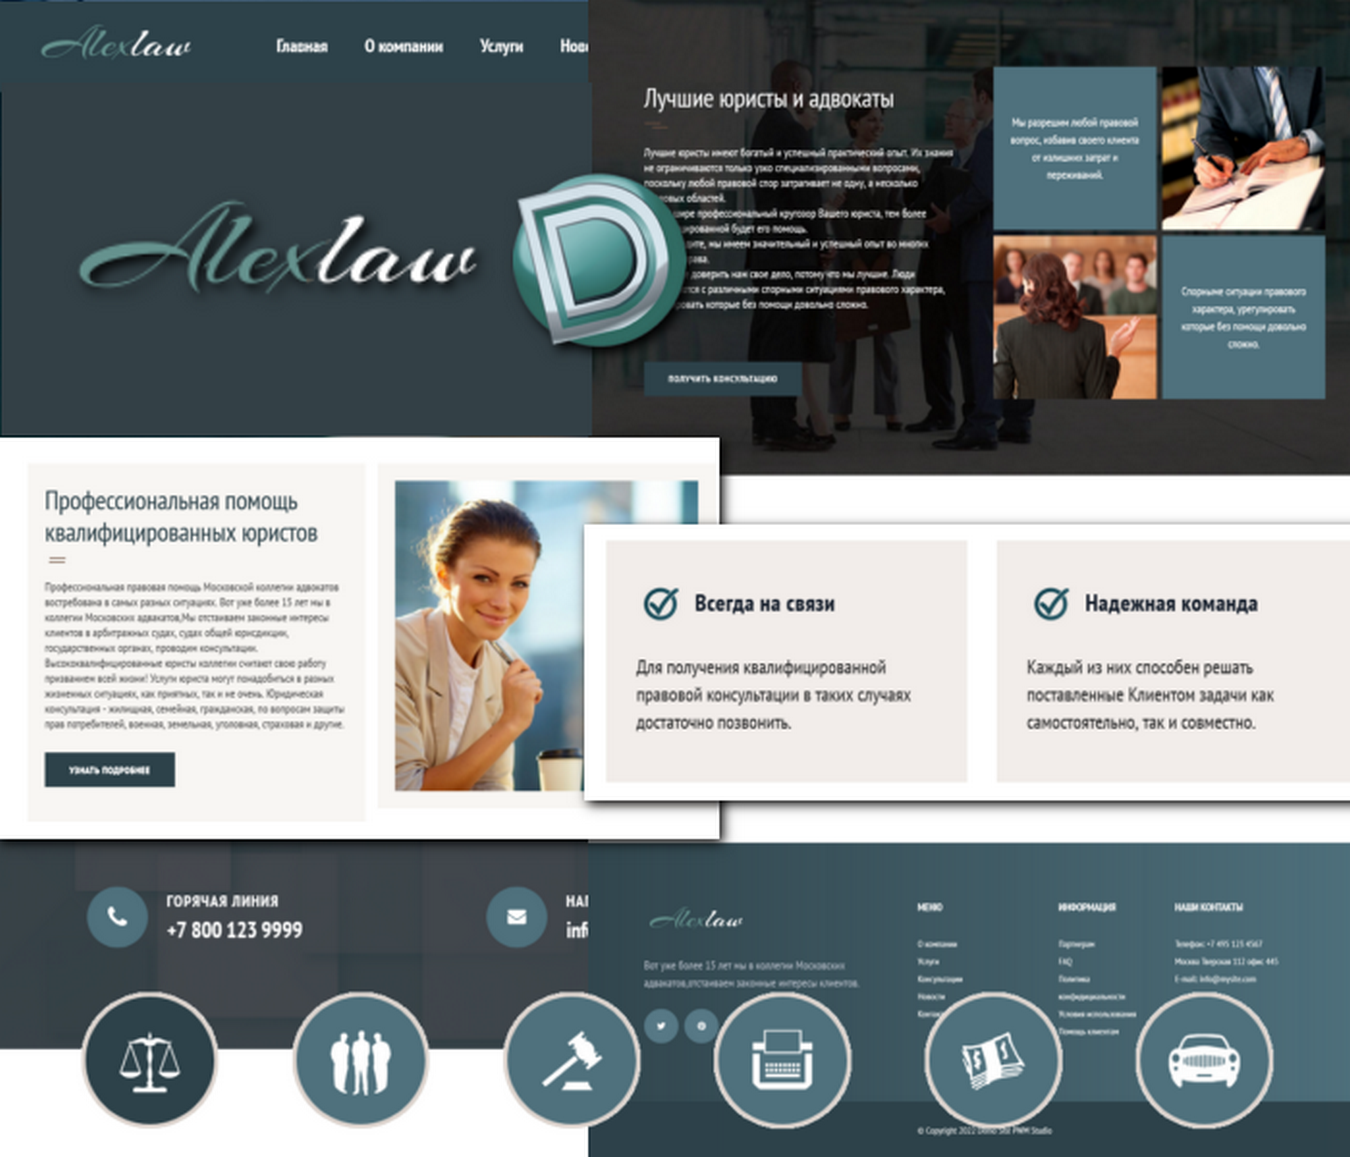 AlexLaw-Sitio web de la compañía Legal dle 15.1